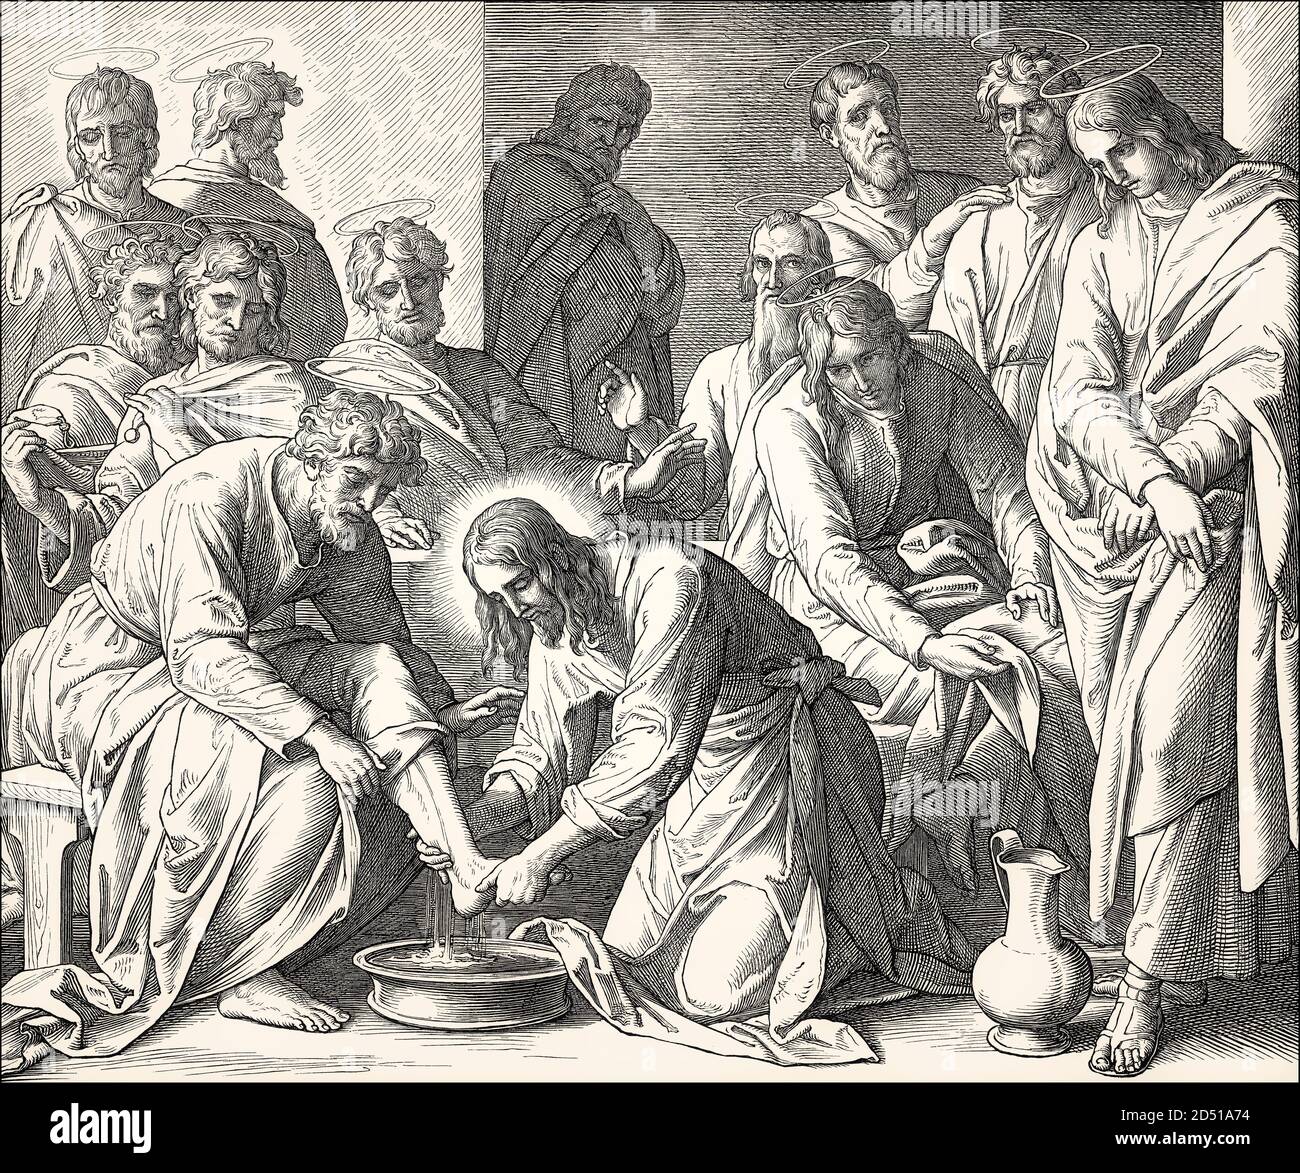 Jesus Washes the Disciples' Feet, New Testament, by Julius Schnorr von Carolsfeld, 1860 Stock Photo